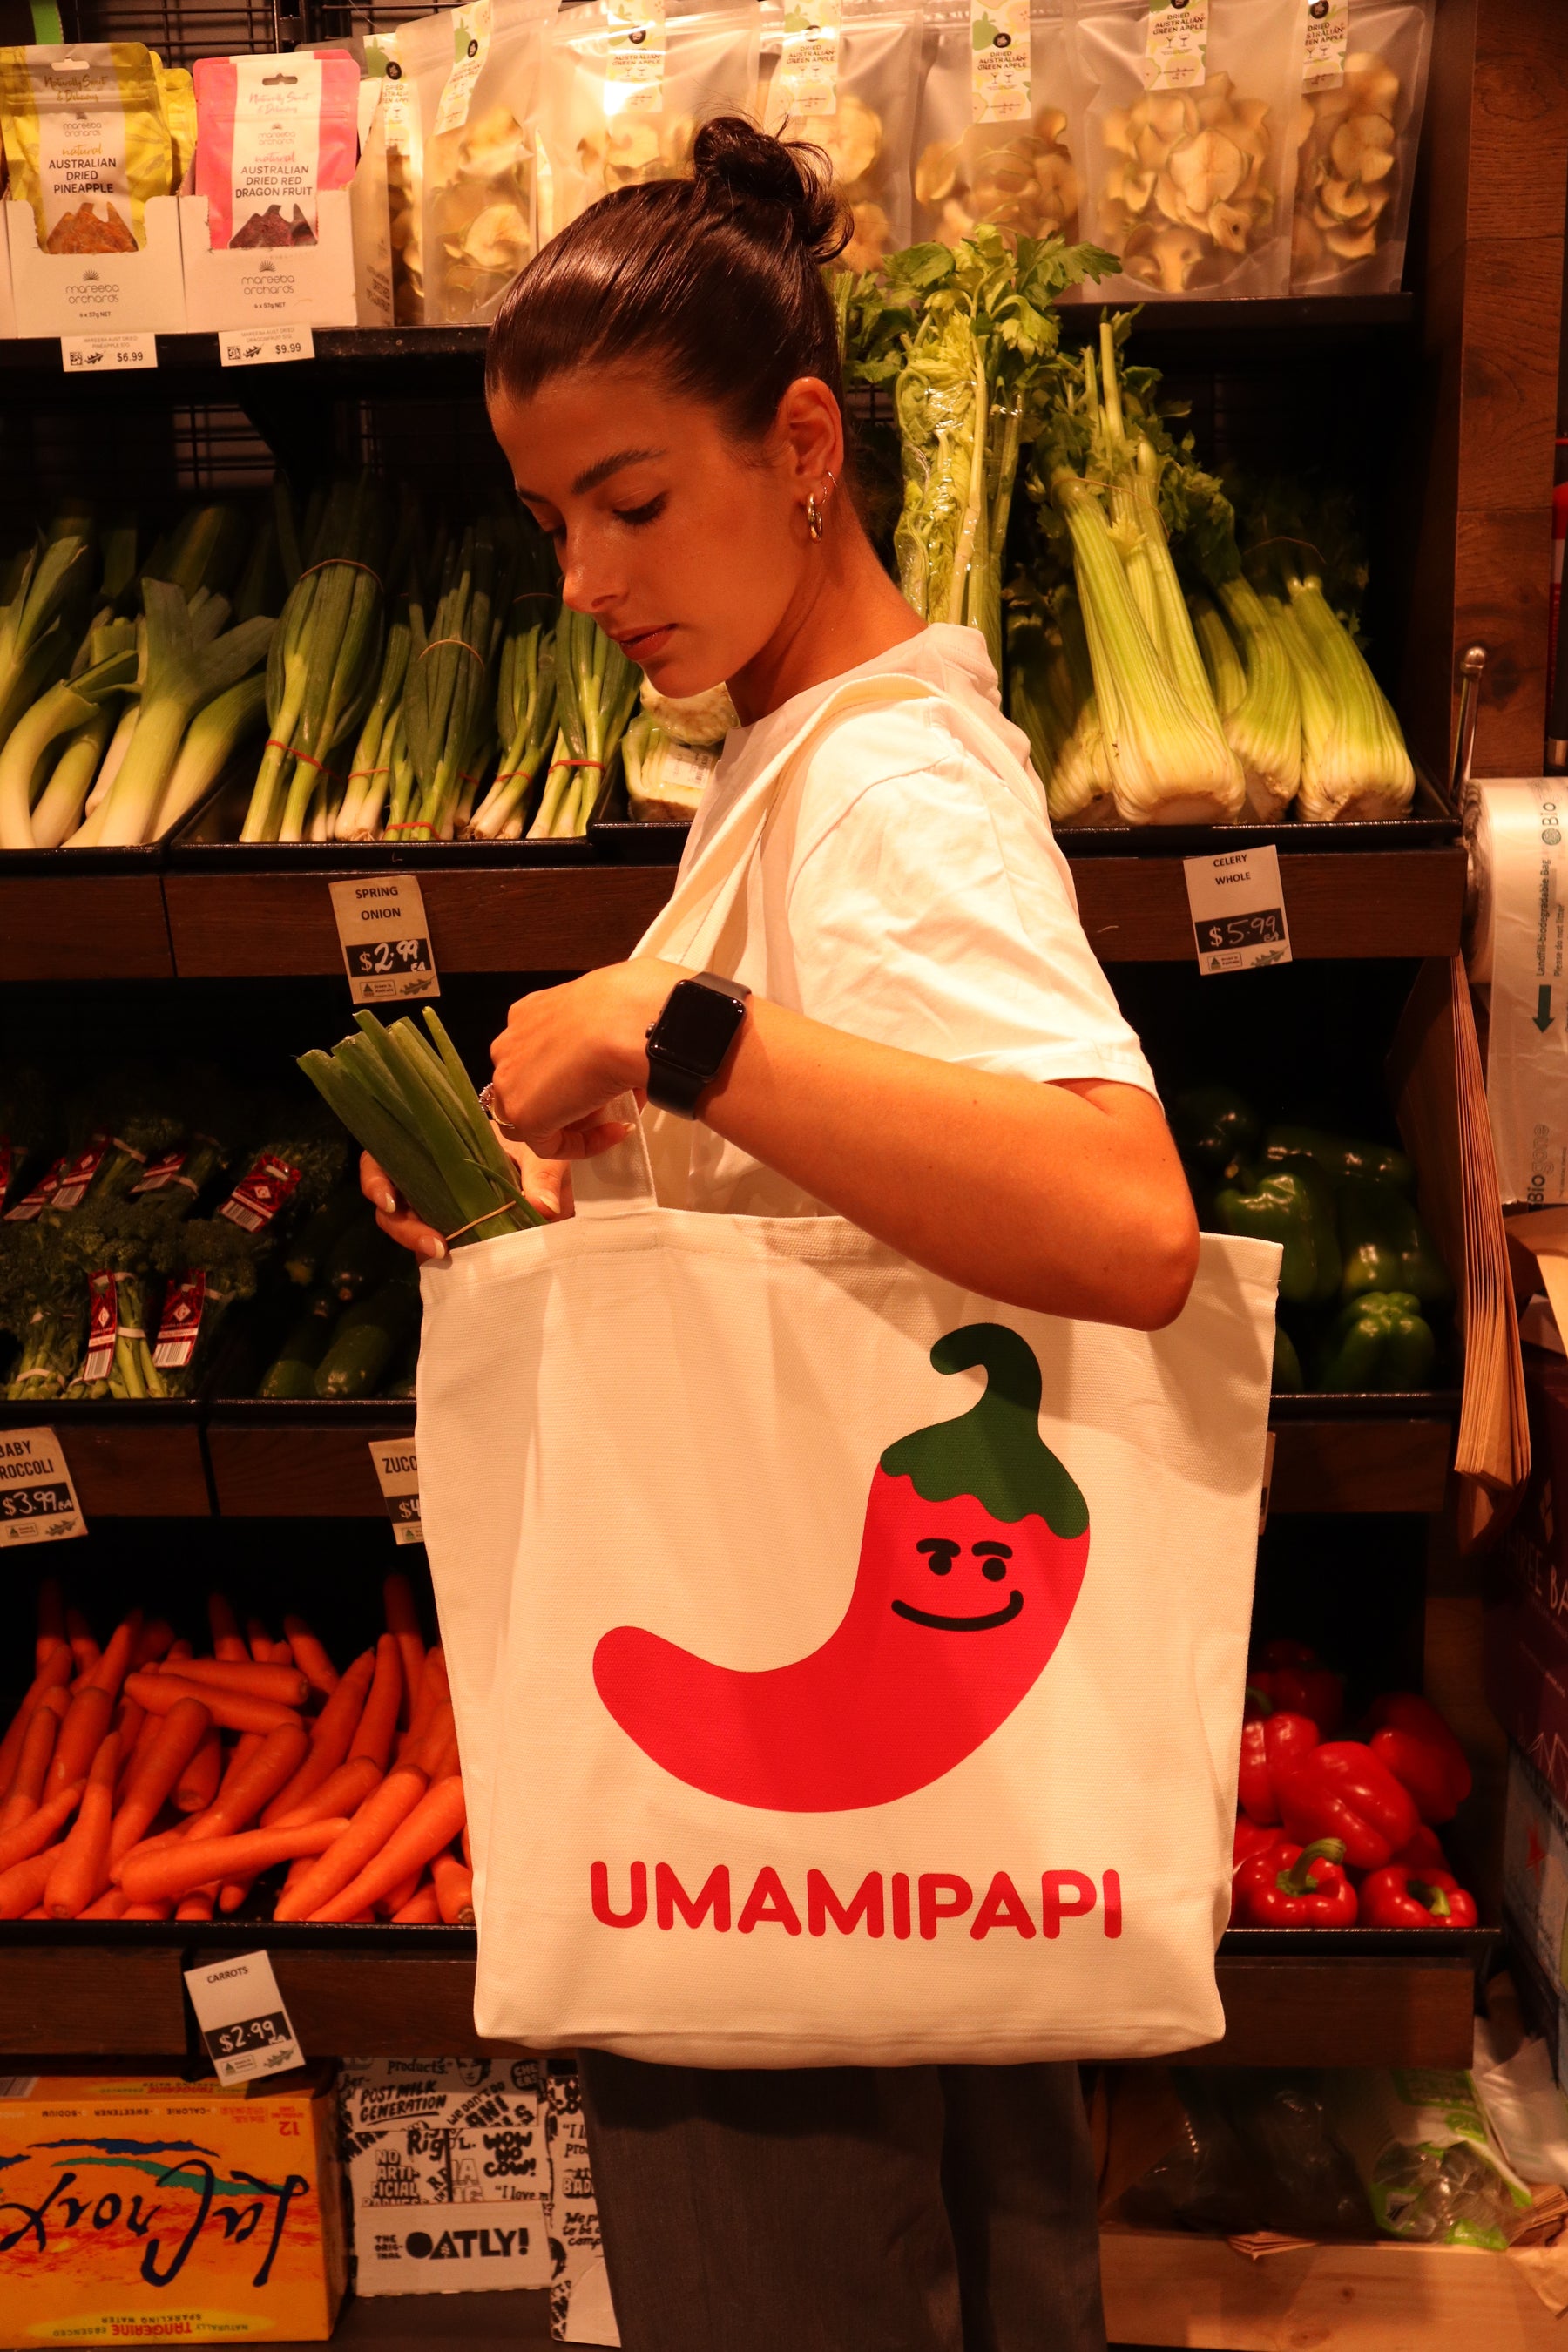 UmamiPapi Tote Bag